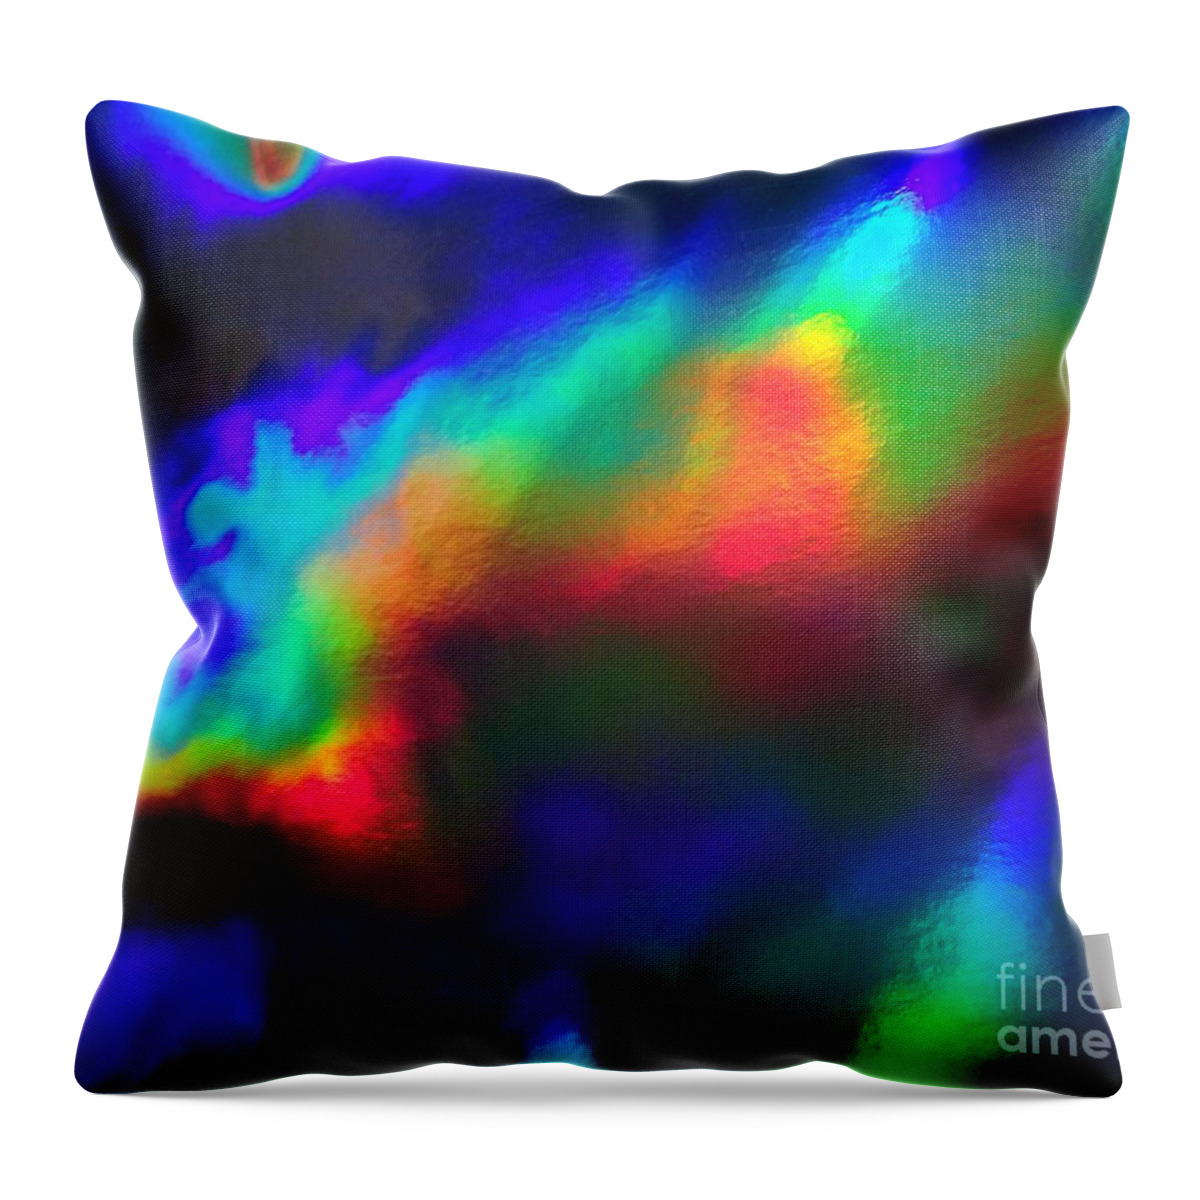 Abstract Art Throw Pillow featuring the photograph Heavenly Lights by Karen Jane Jones